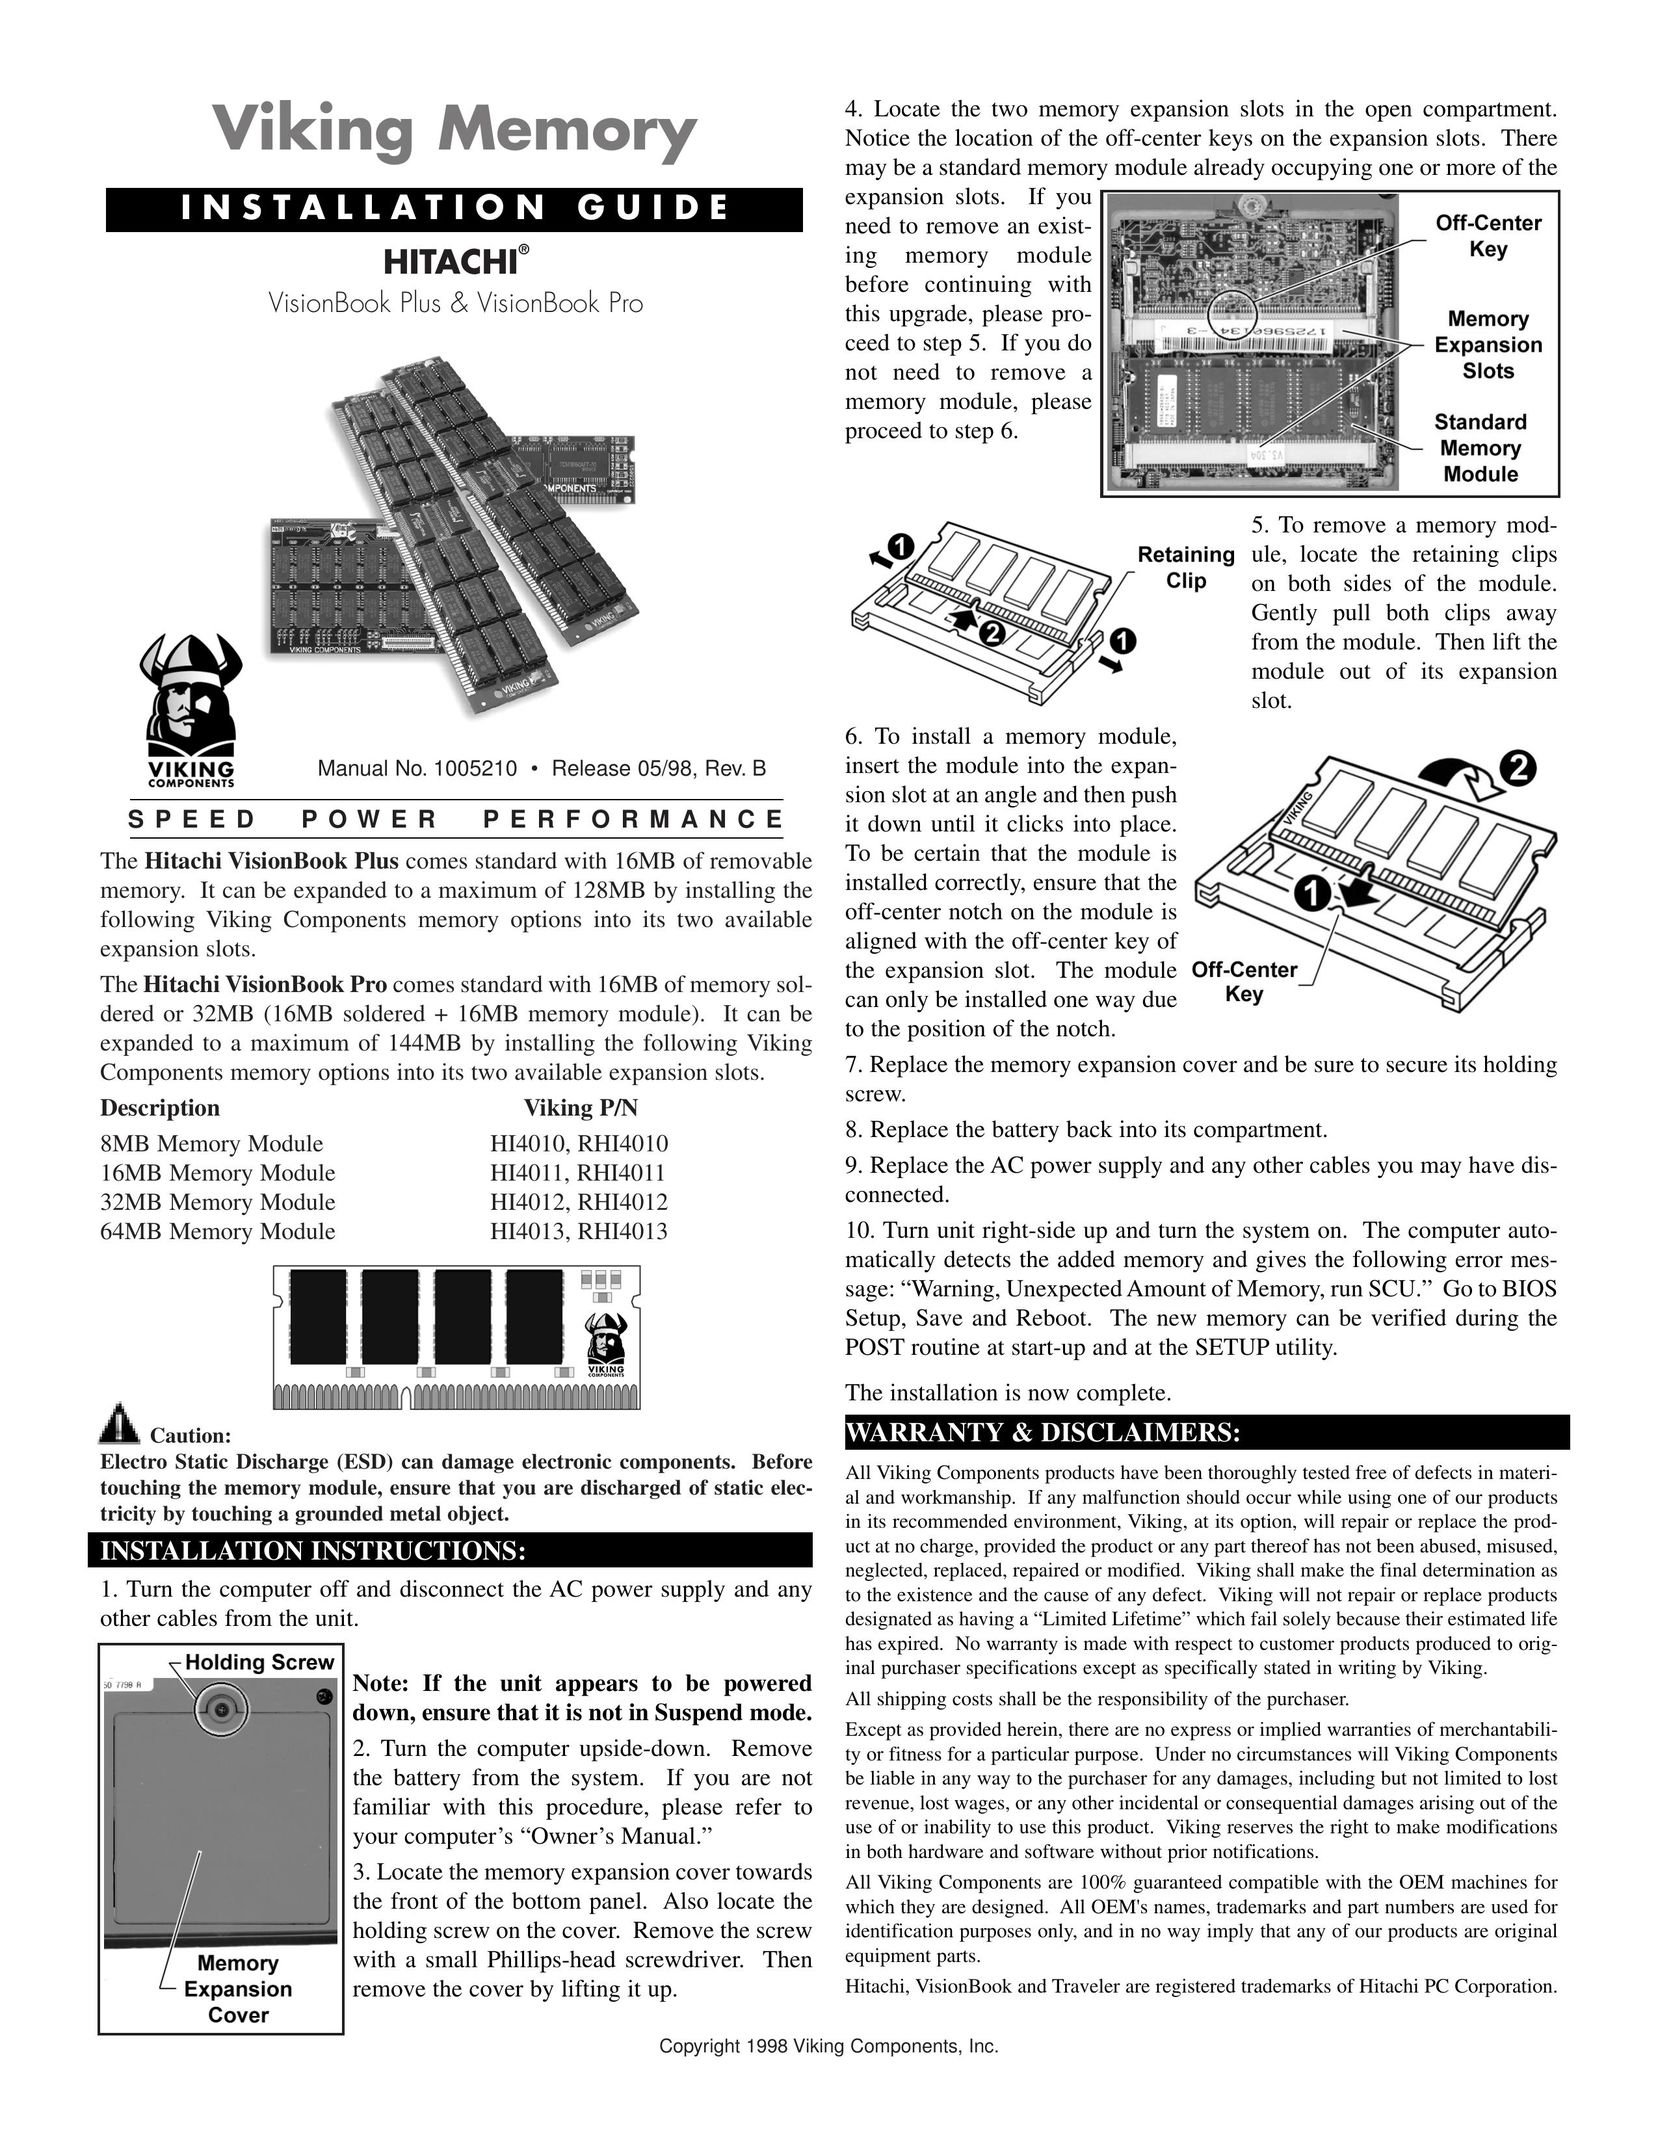 Viking 32MB Memory Module HI4012 Personal Computer User Manual